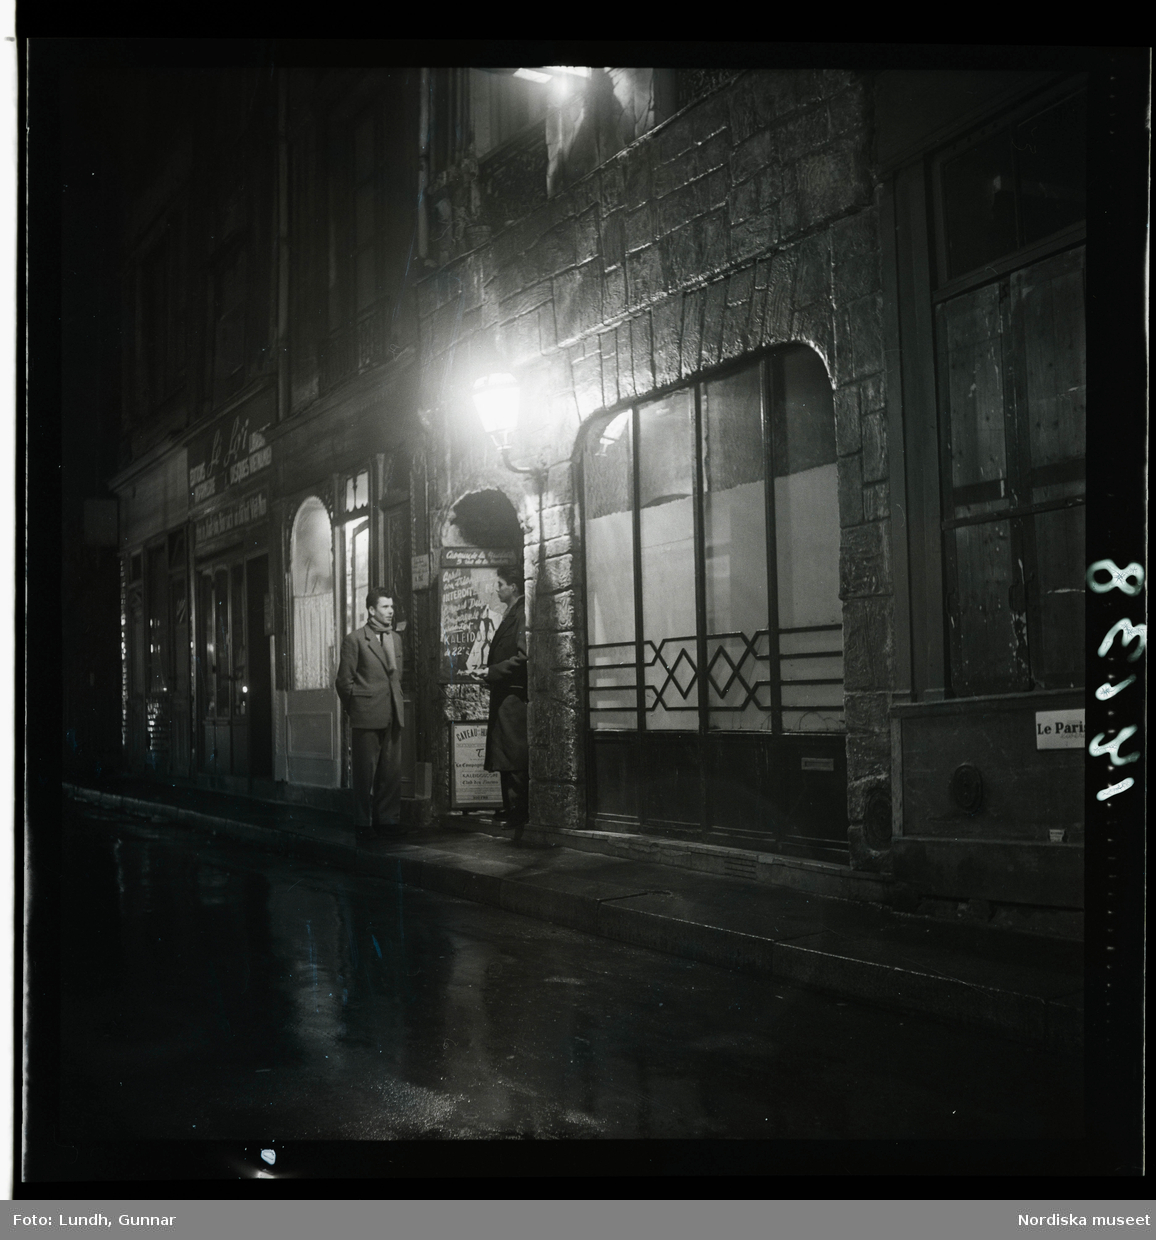 1950. Paris. Två män stående på gata kvällsbild.